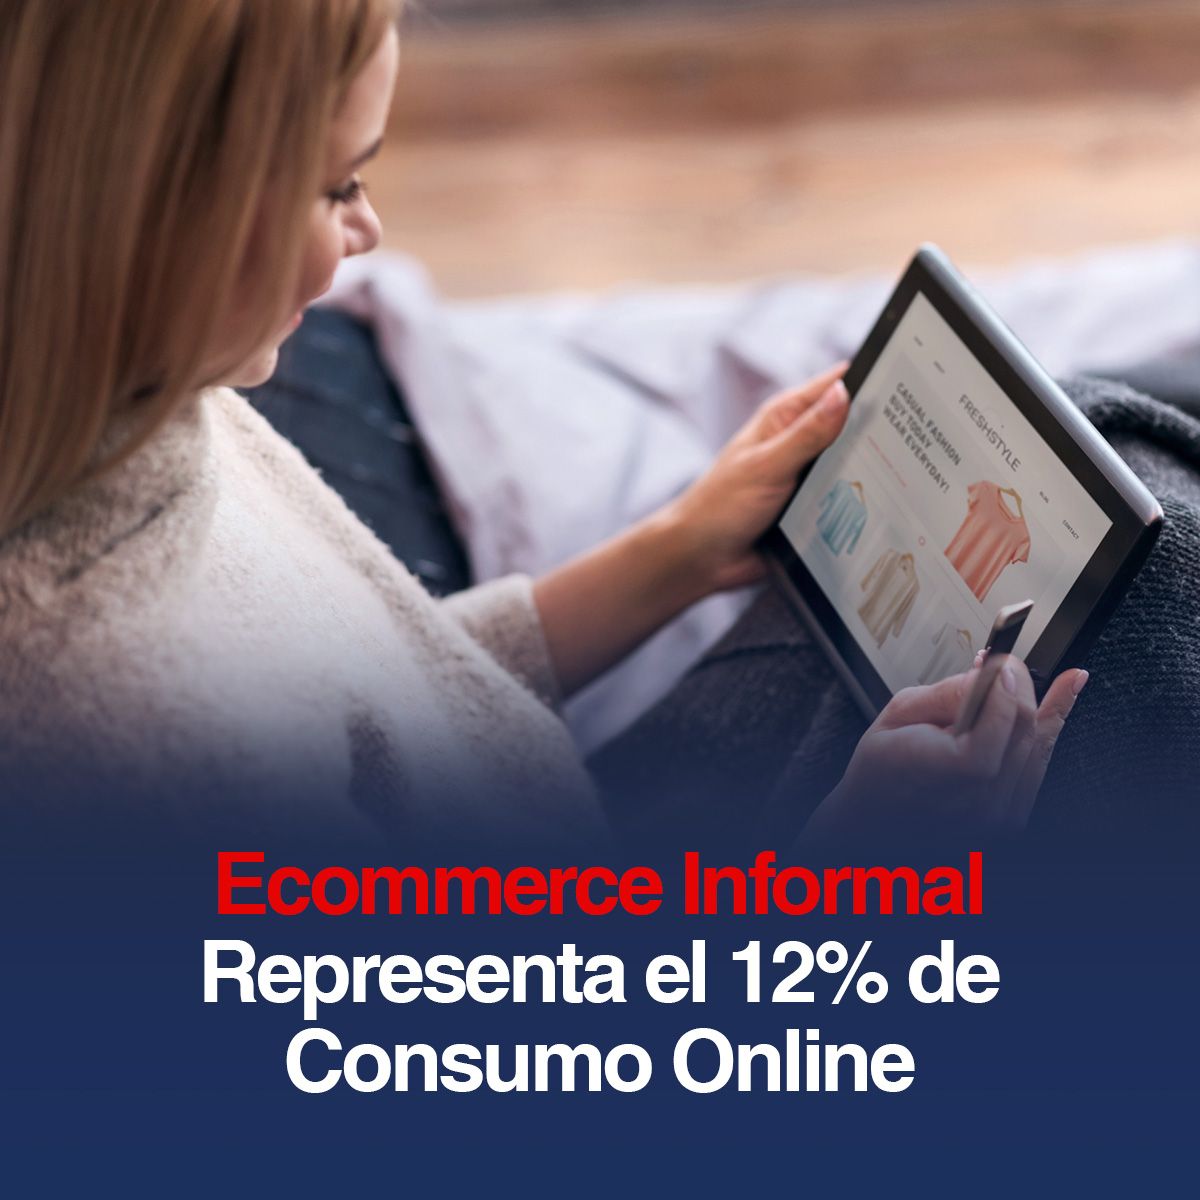 Ecommerce Informal Representa el 12% de Consumo Online